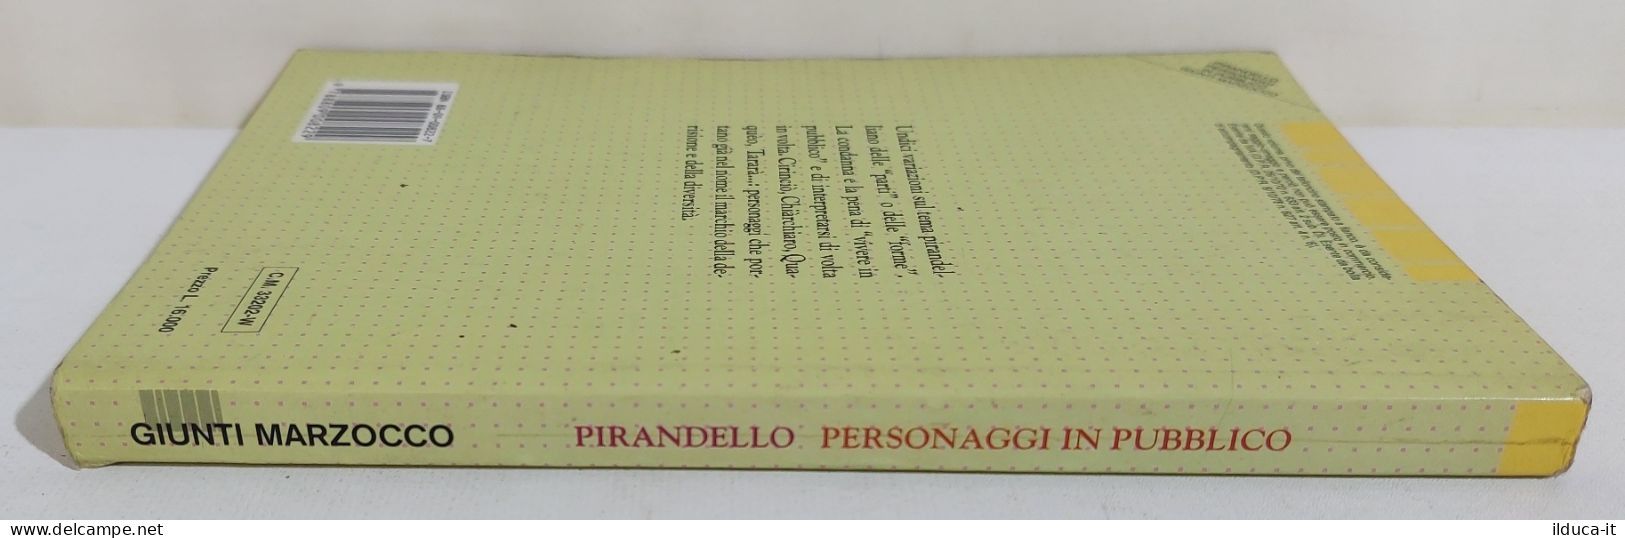 I116383 Luigi Pirandello - Personaggi In Pubblico - Giunti 1992 - Classic